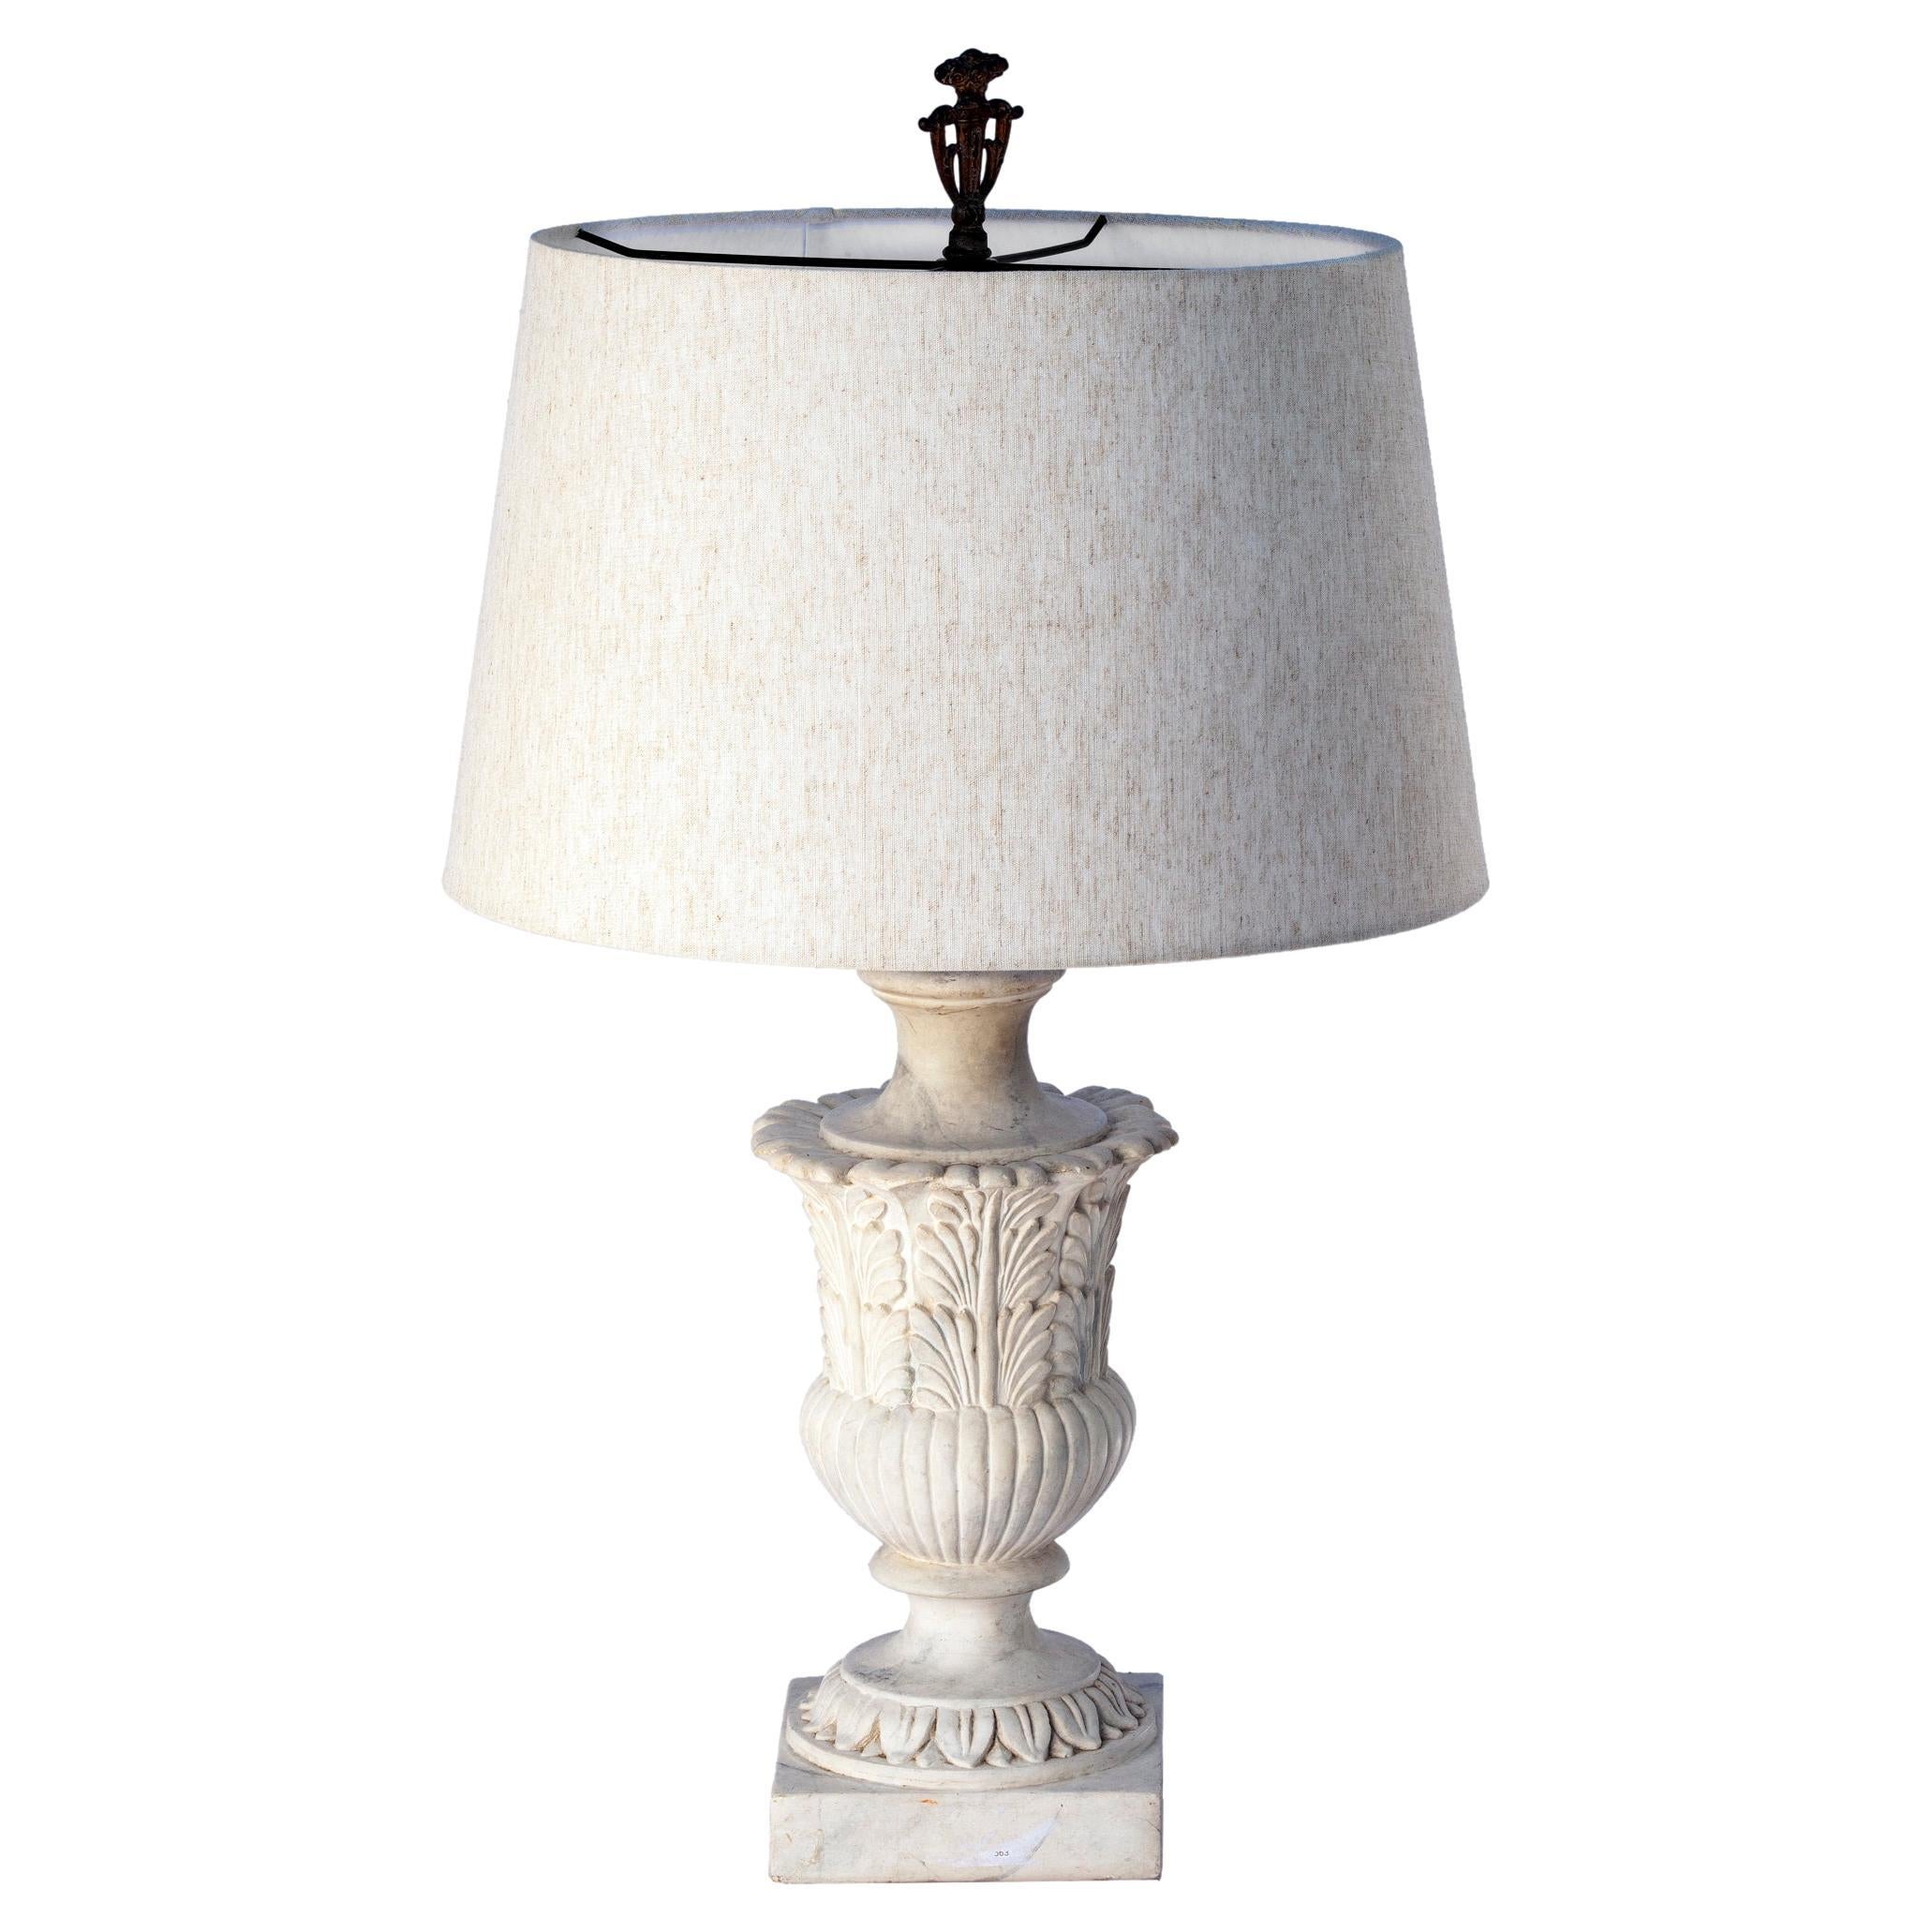 Lampe aus weißem Marmor mit weißem Leinenschirm